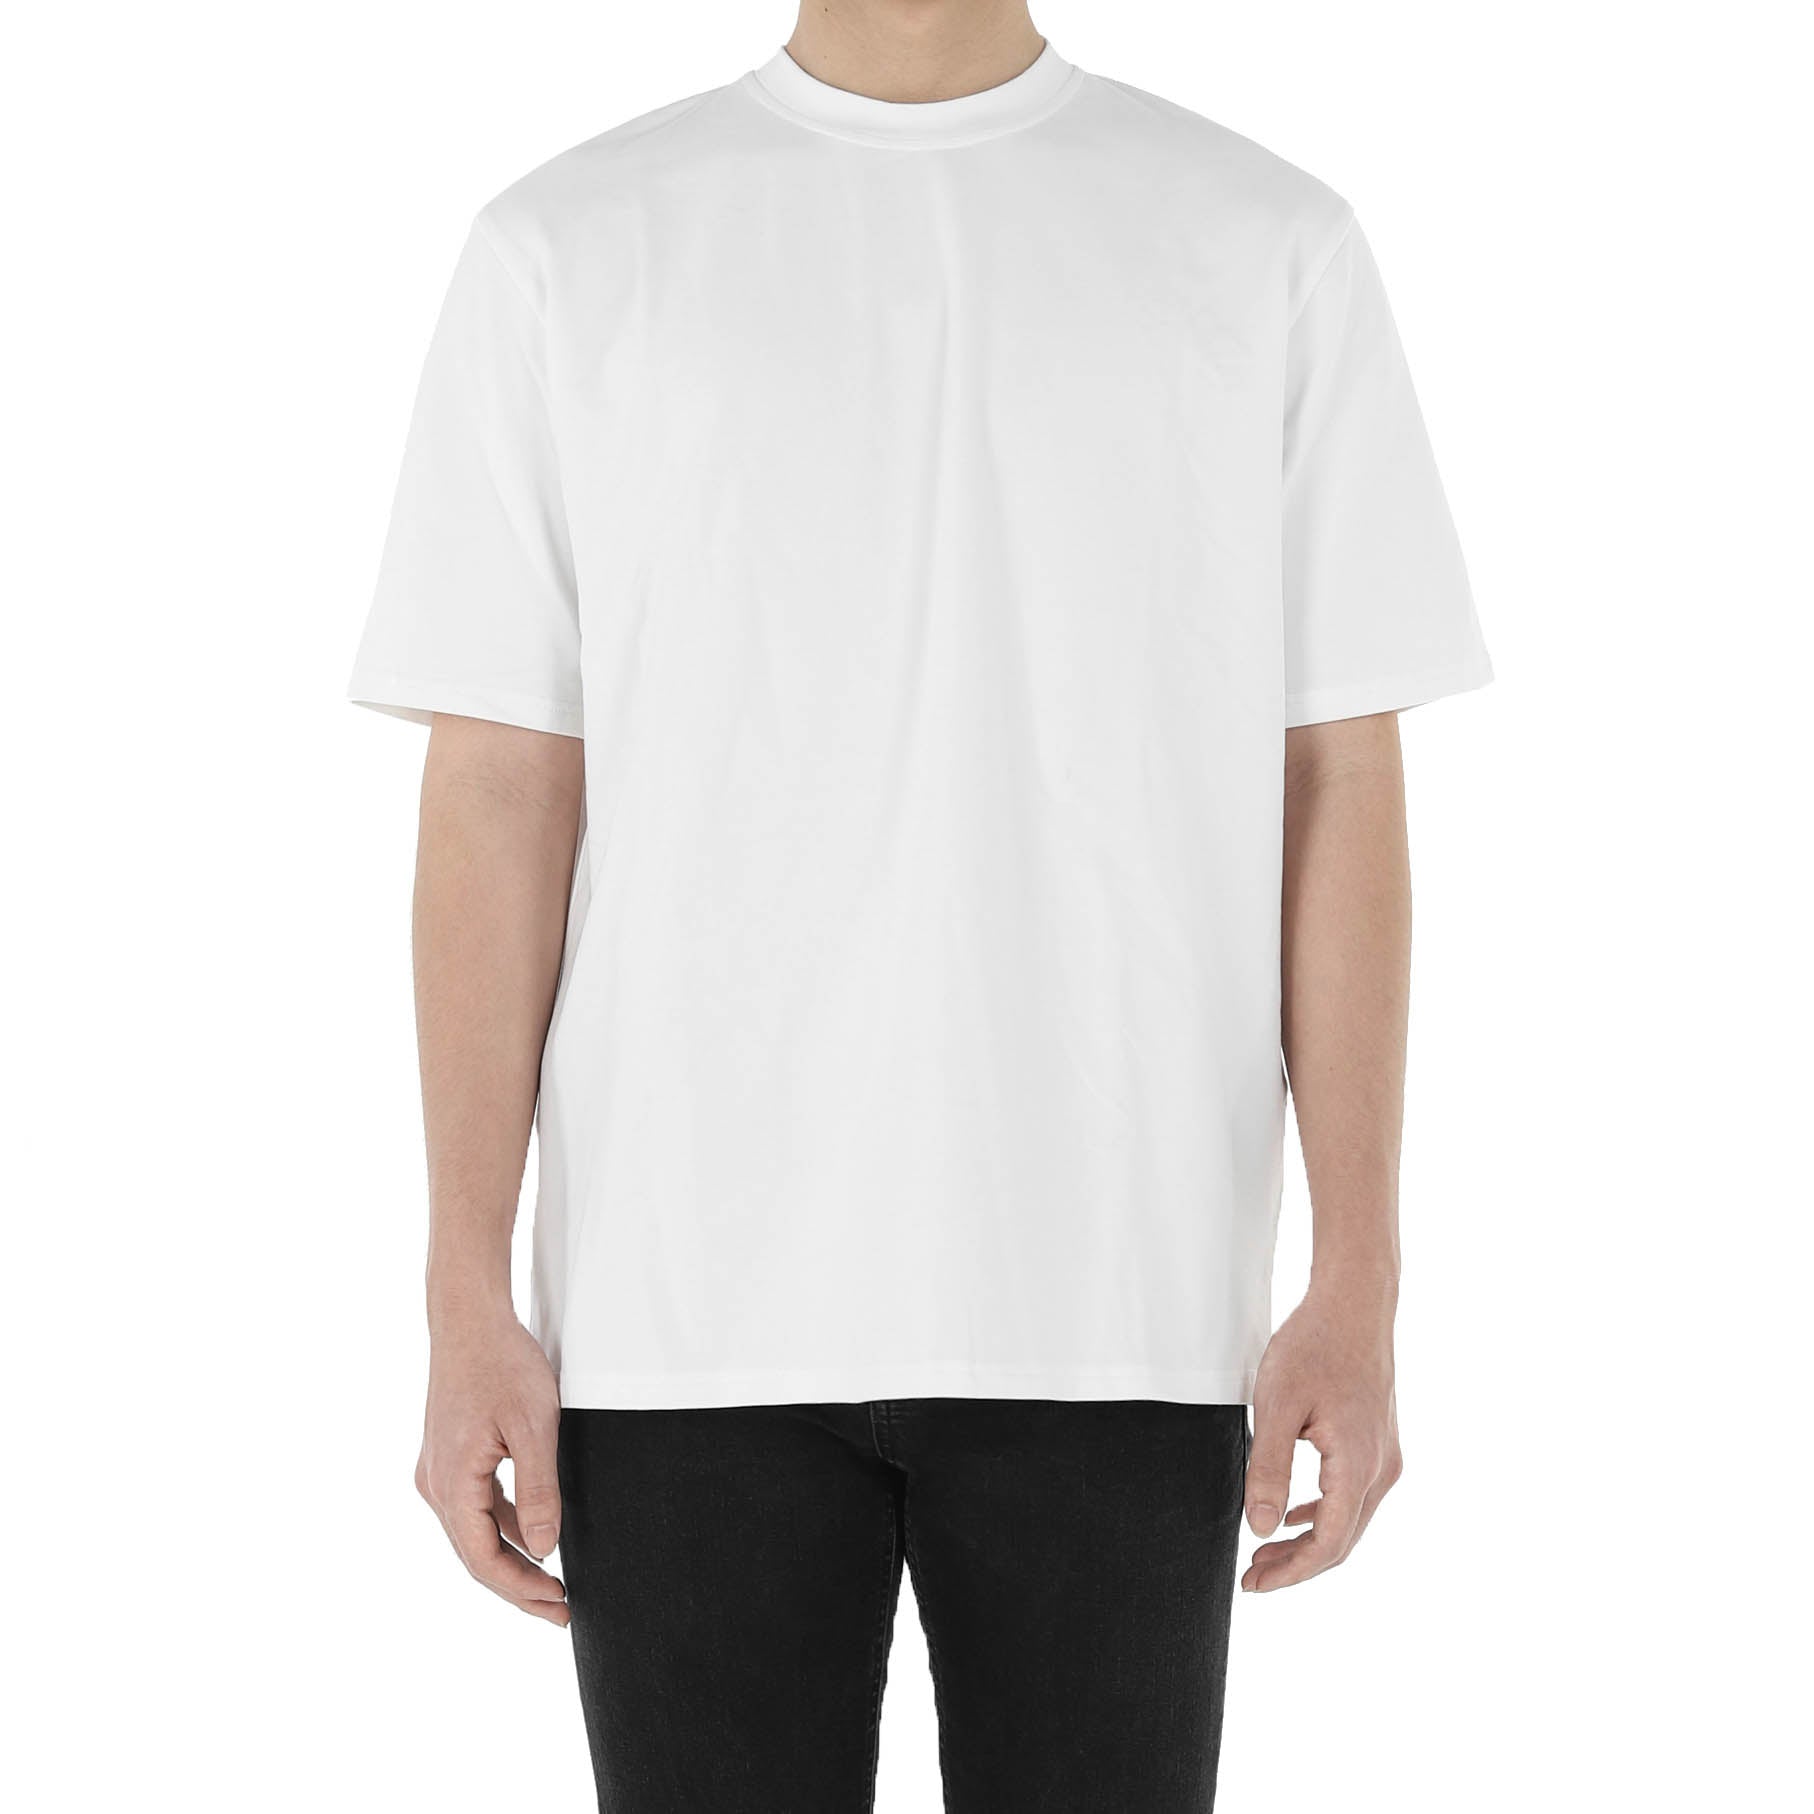 oversized white tee shirt